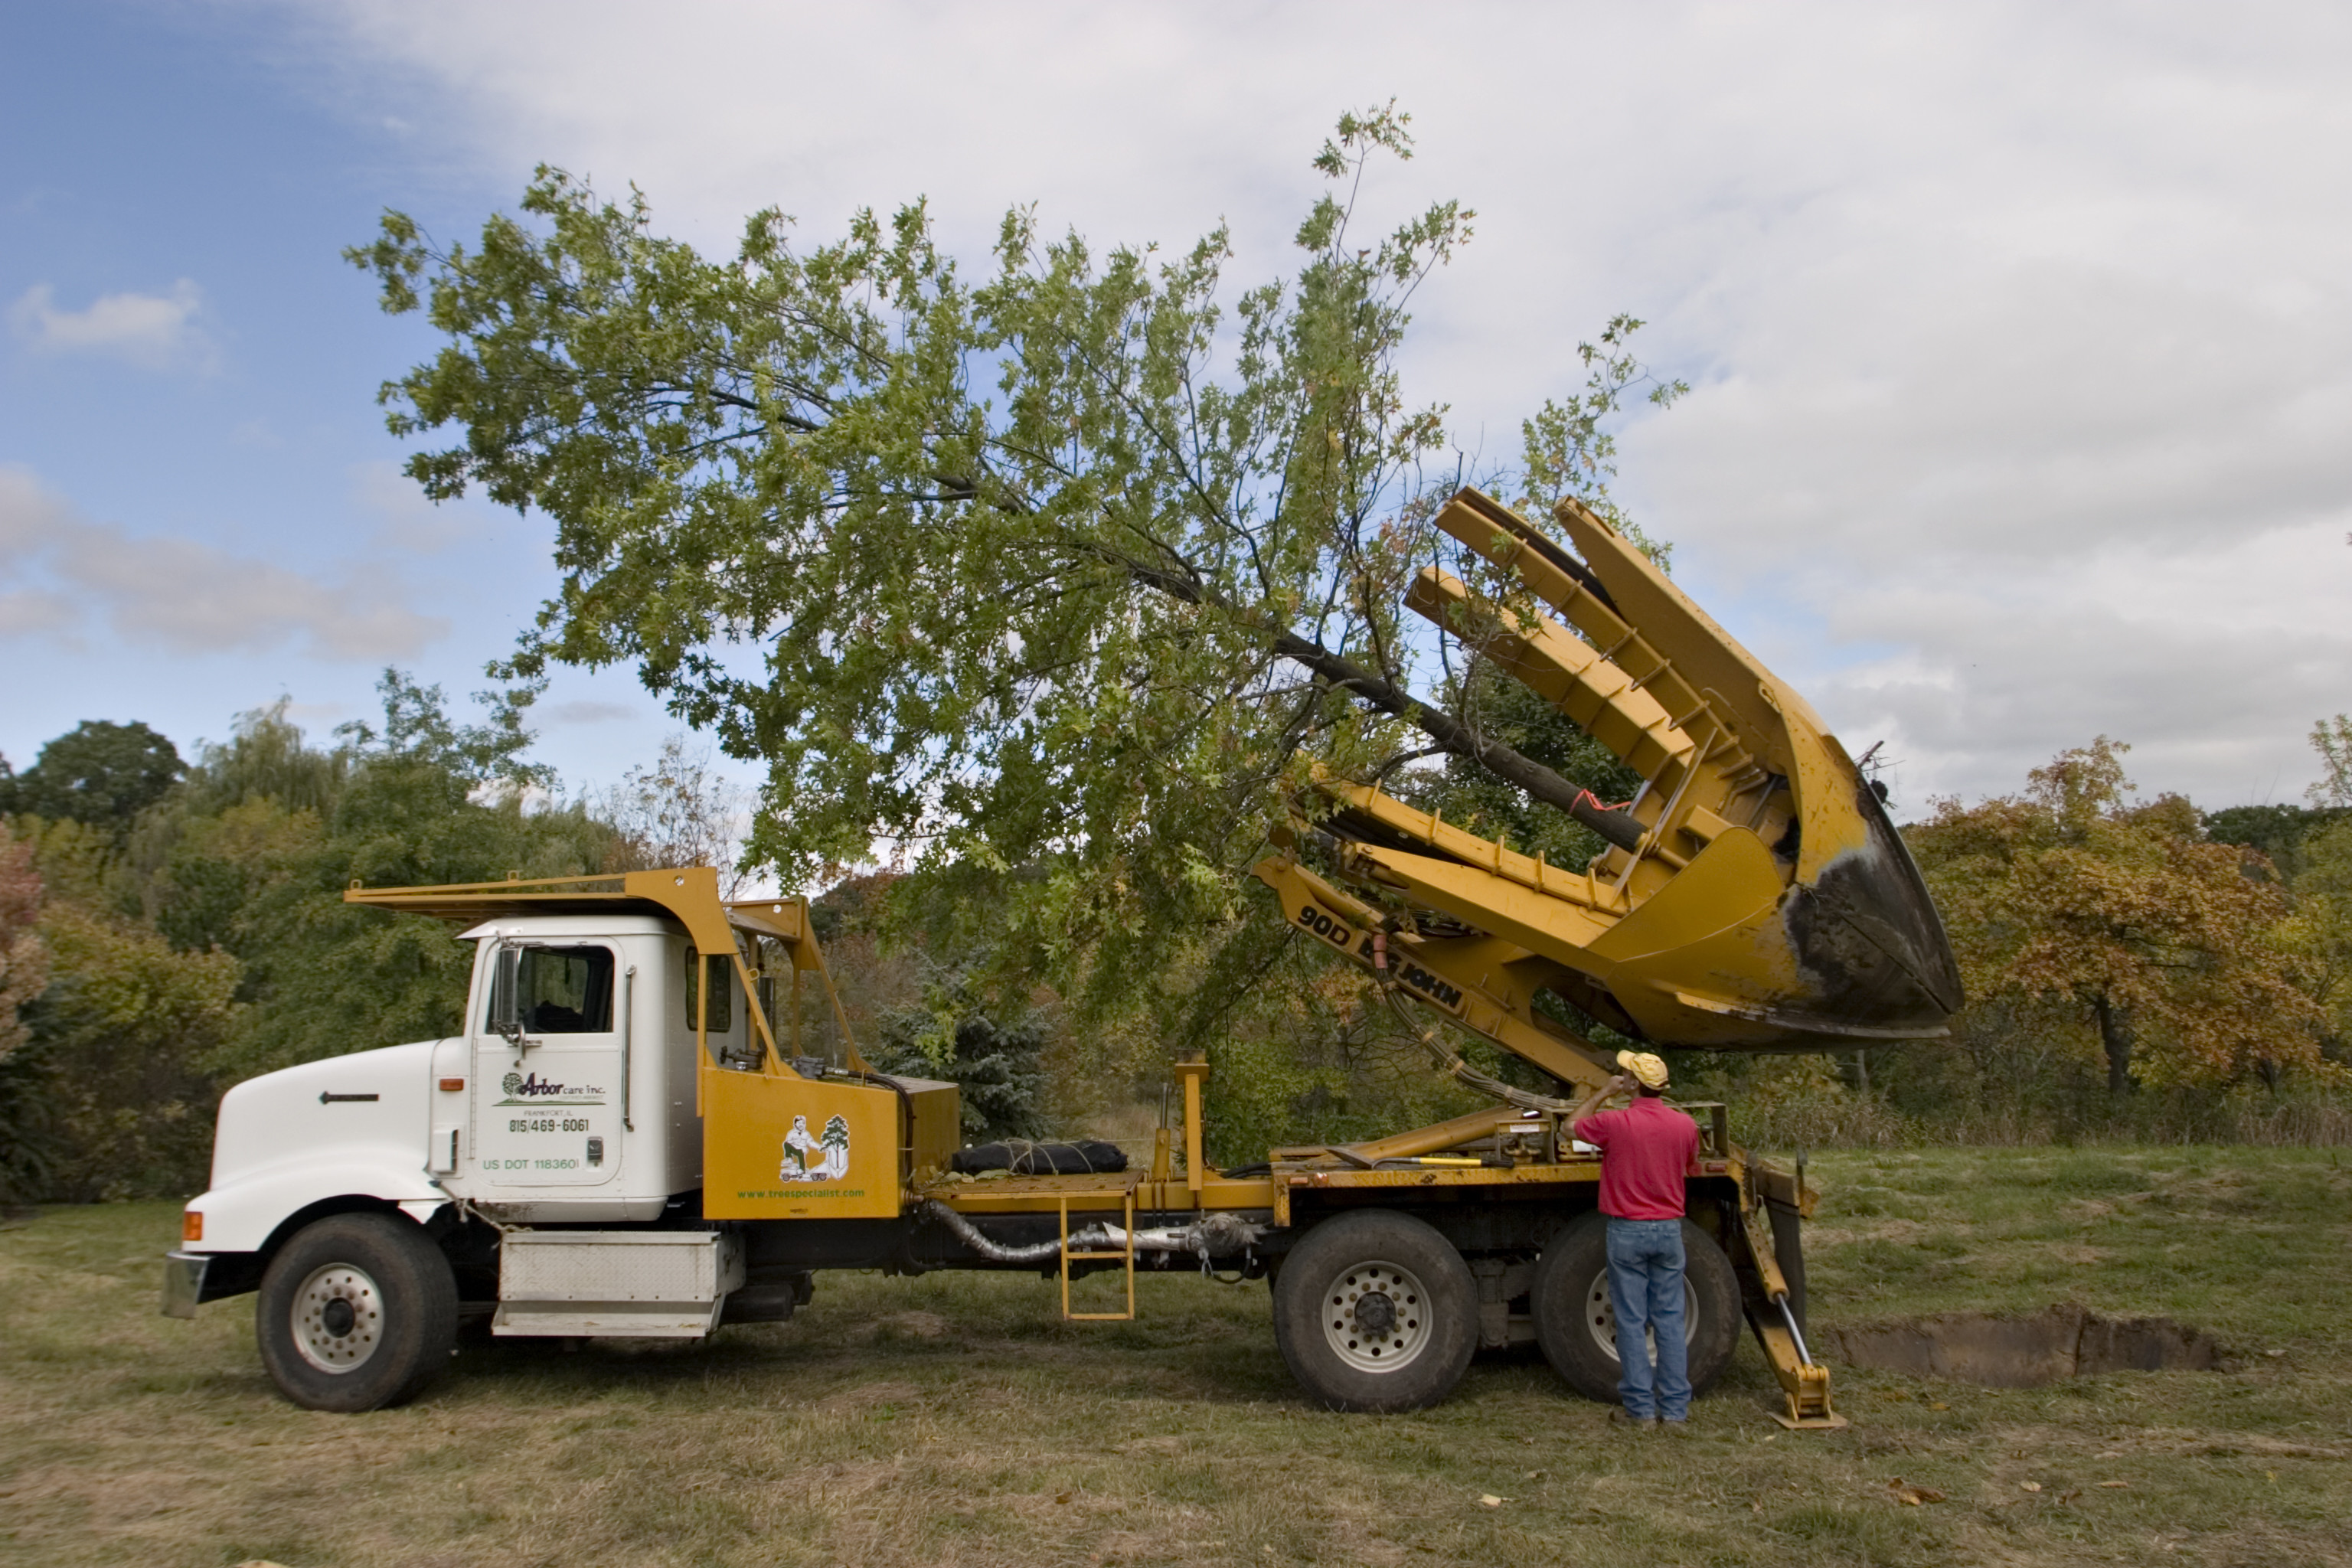 Large tree sales Illinois - Tree Transplanting Illinois | Big Tree ...